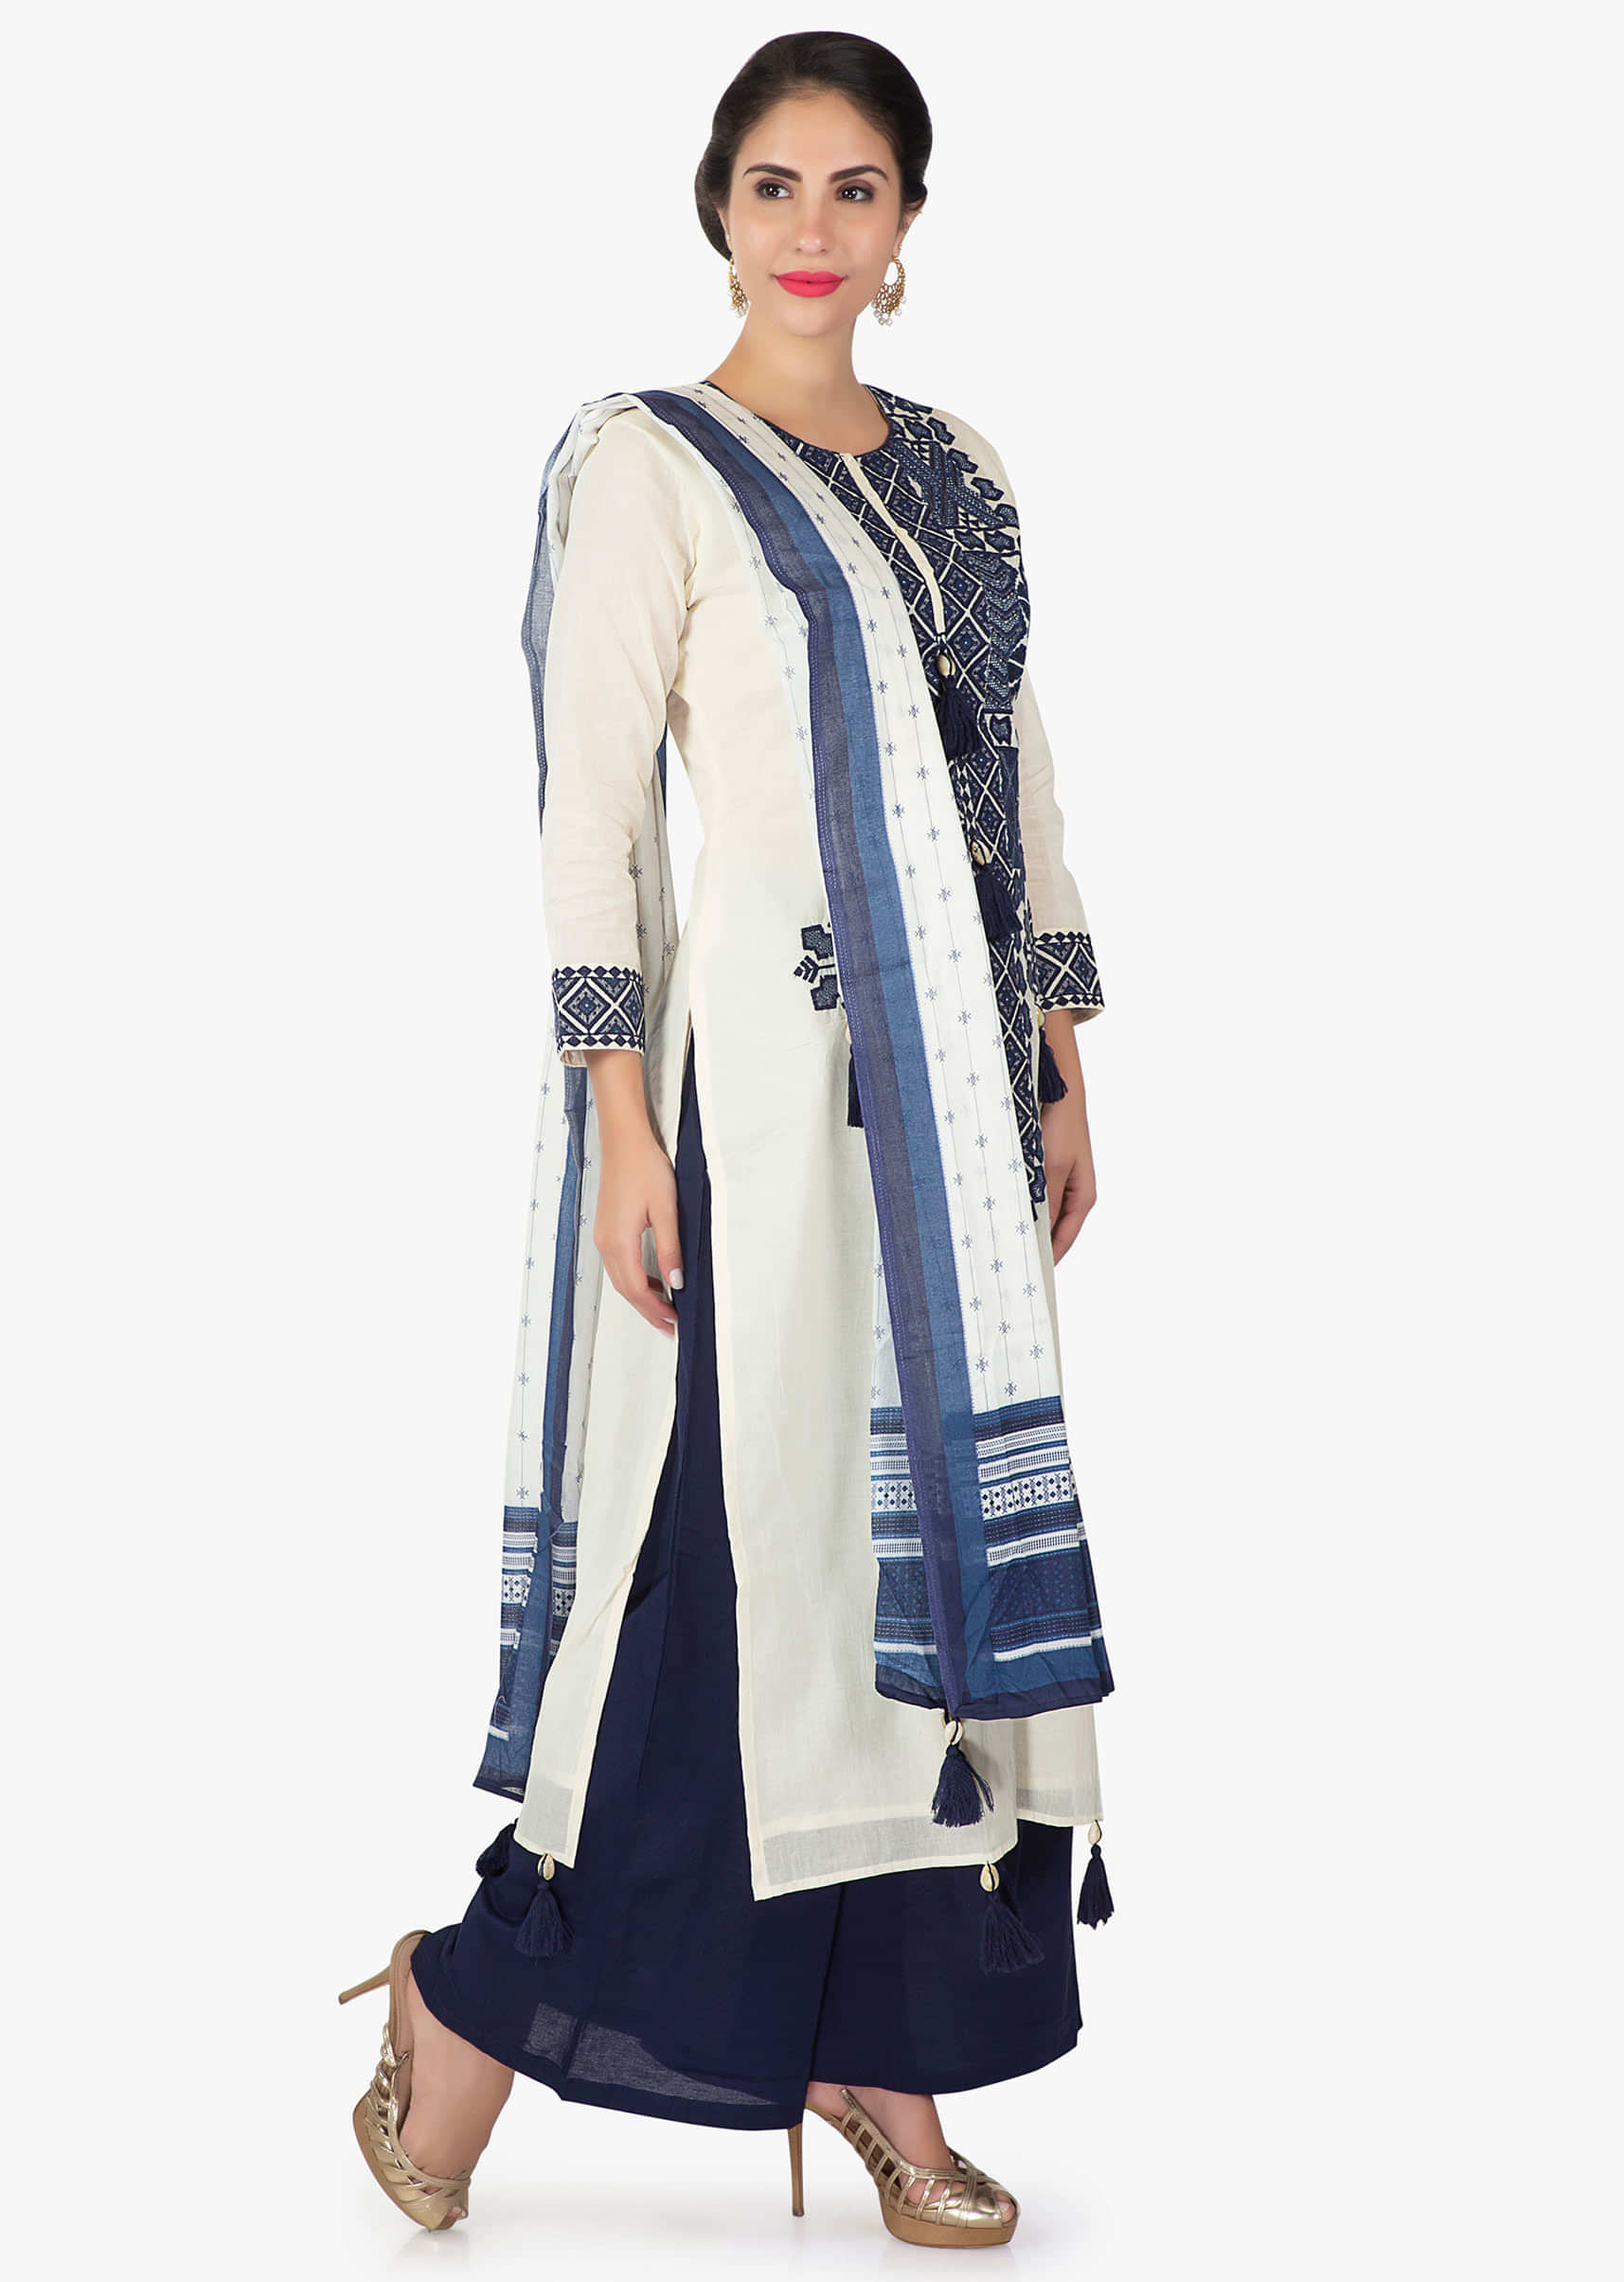 Off white cotton kurti with neckline in navy blue resham work and tassel